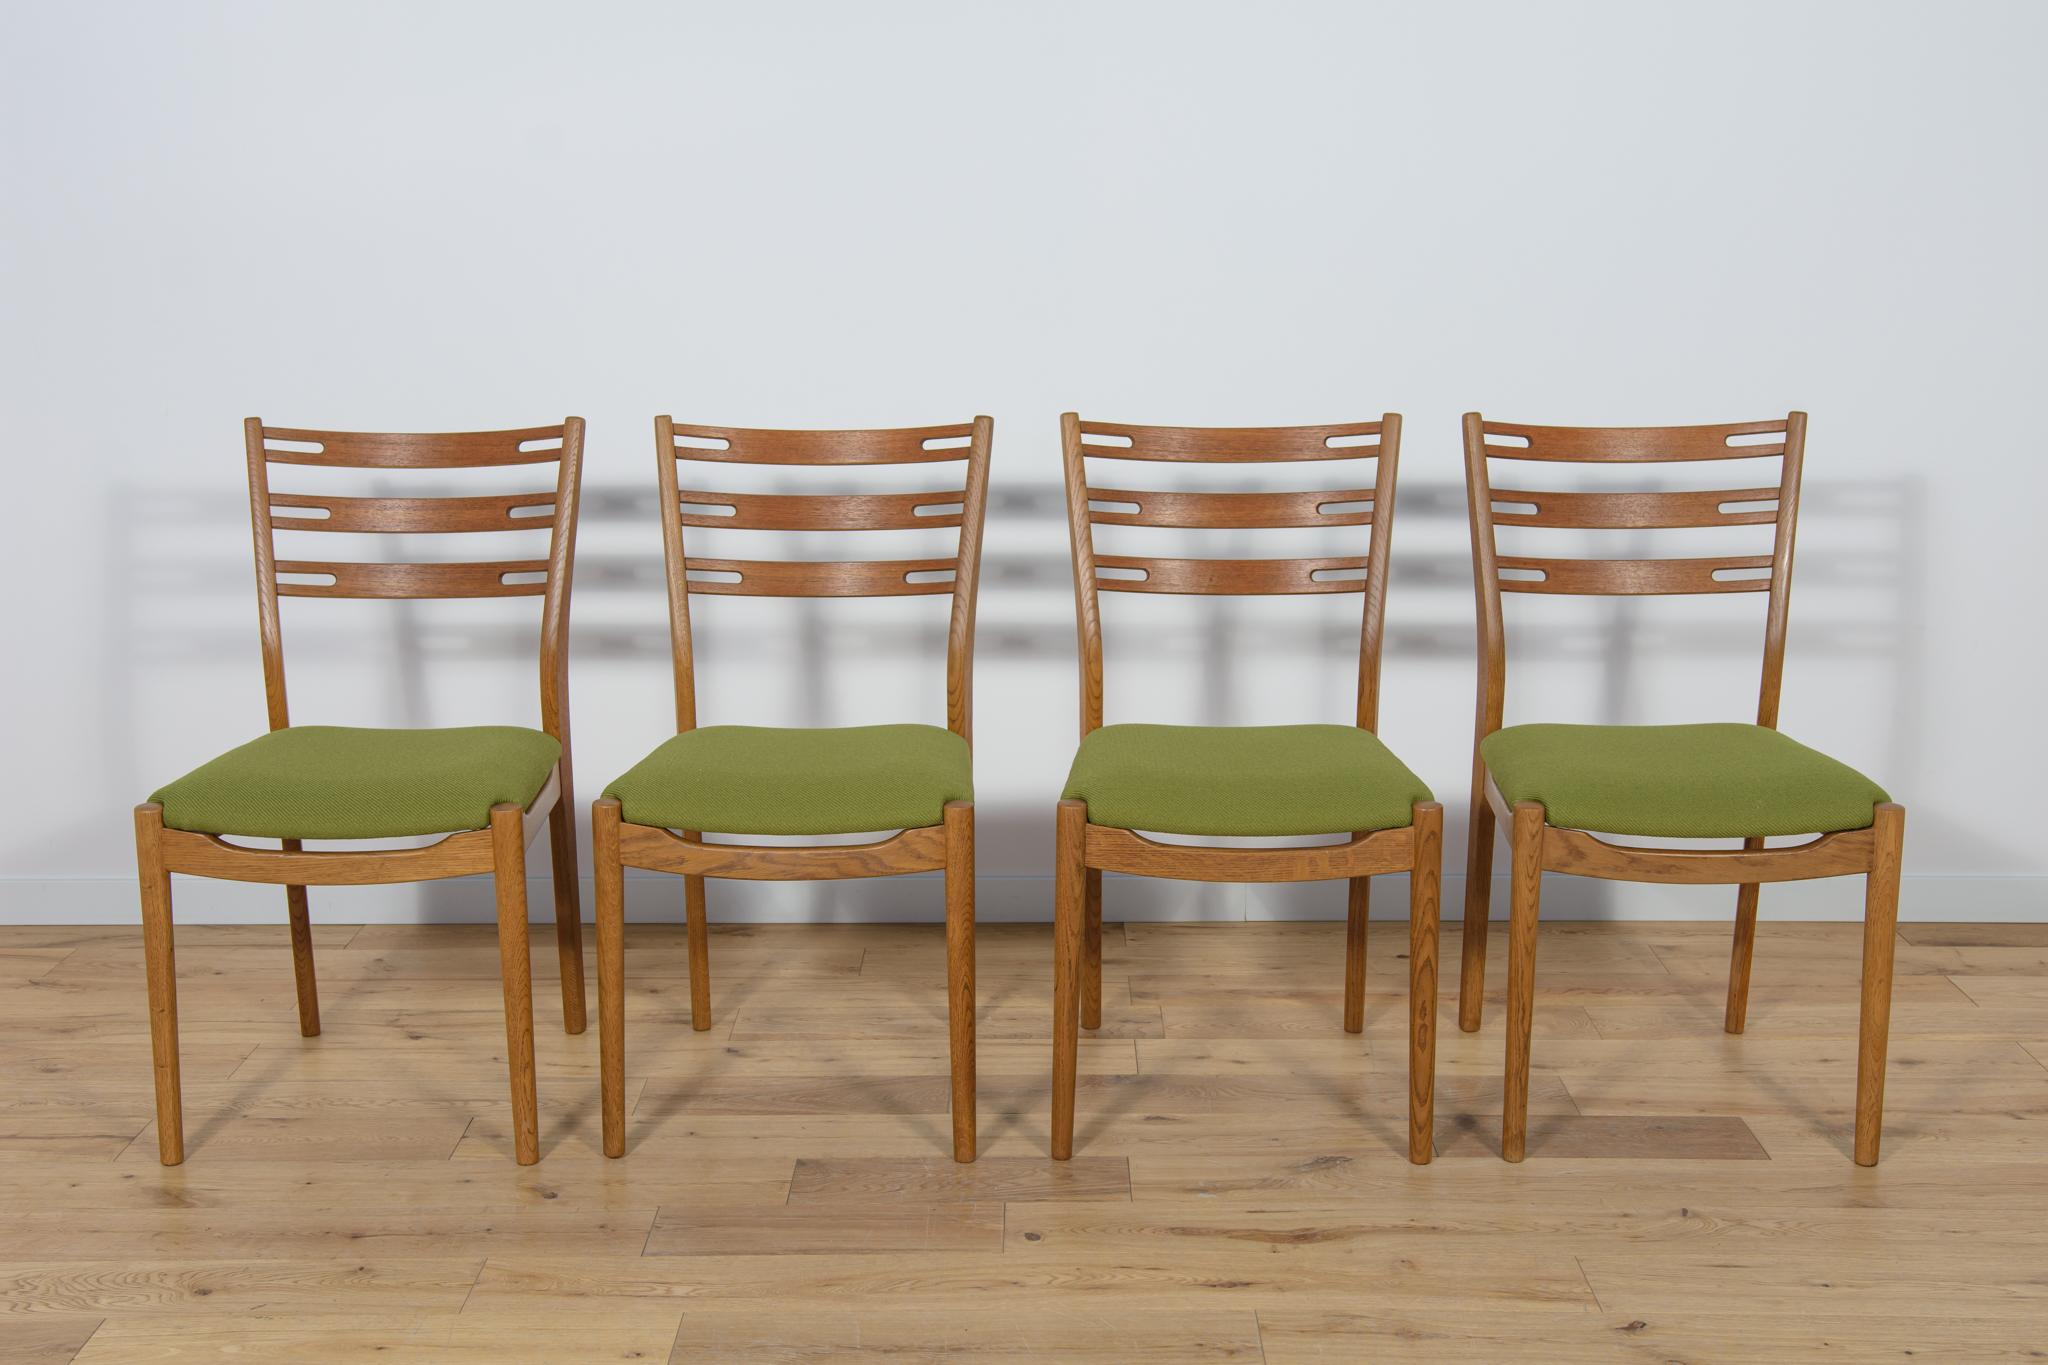 Chaises de salle à manger modèle 210 fabriquées par Farstrup au Danemark dans les années 1960.  Le cadre est en bois de chêne, les dossiers sont en teck, l'ensemble a été nettoyé de l'ancienne surface et recouvert d'une cire couleur chêne. Les